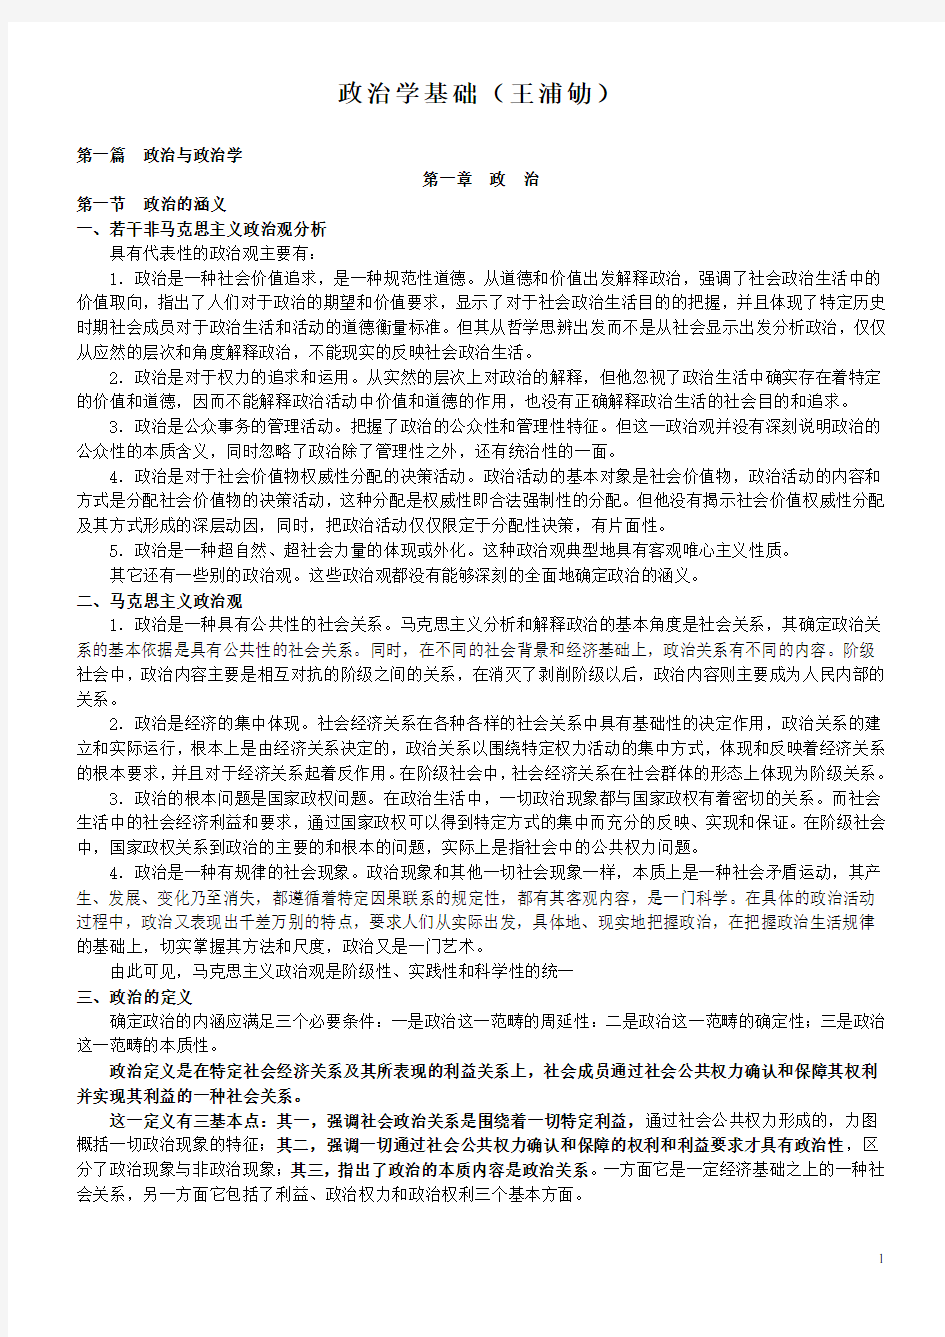 王浦劬《政治学基础(第二版)》笔记详细版1234(全)